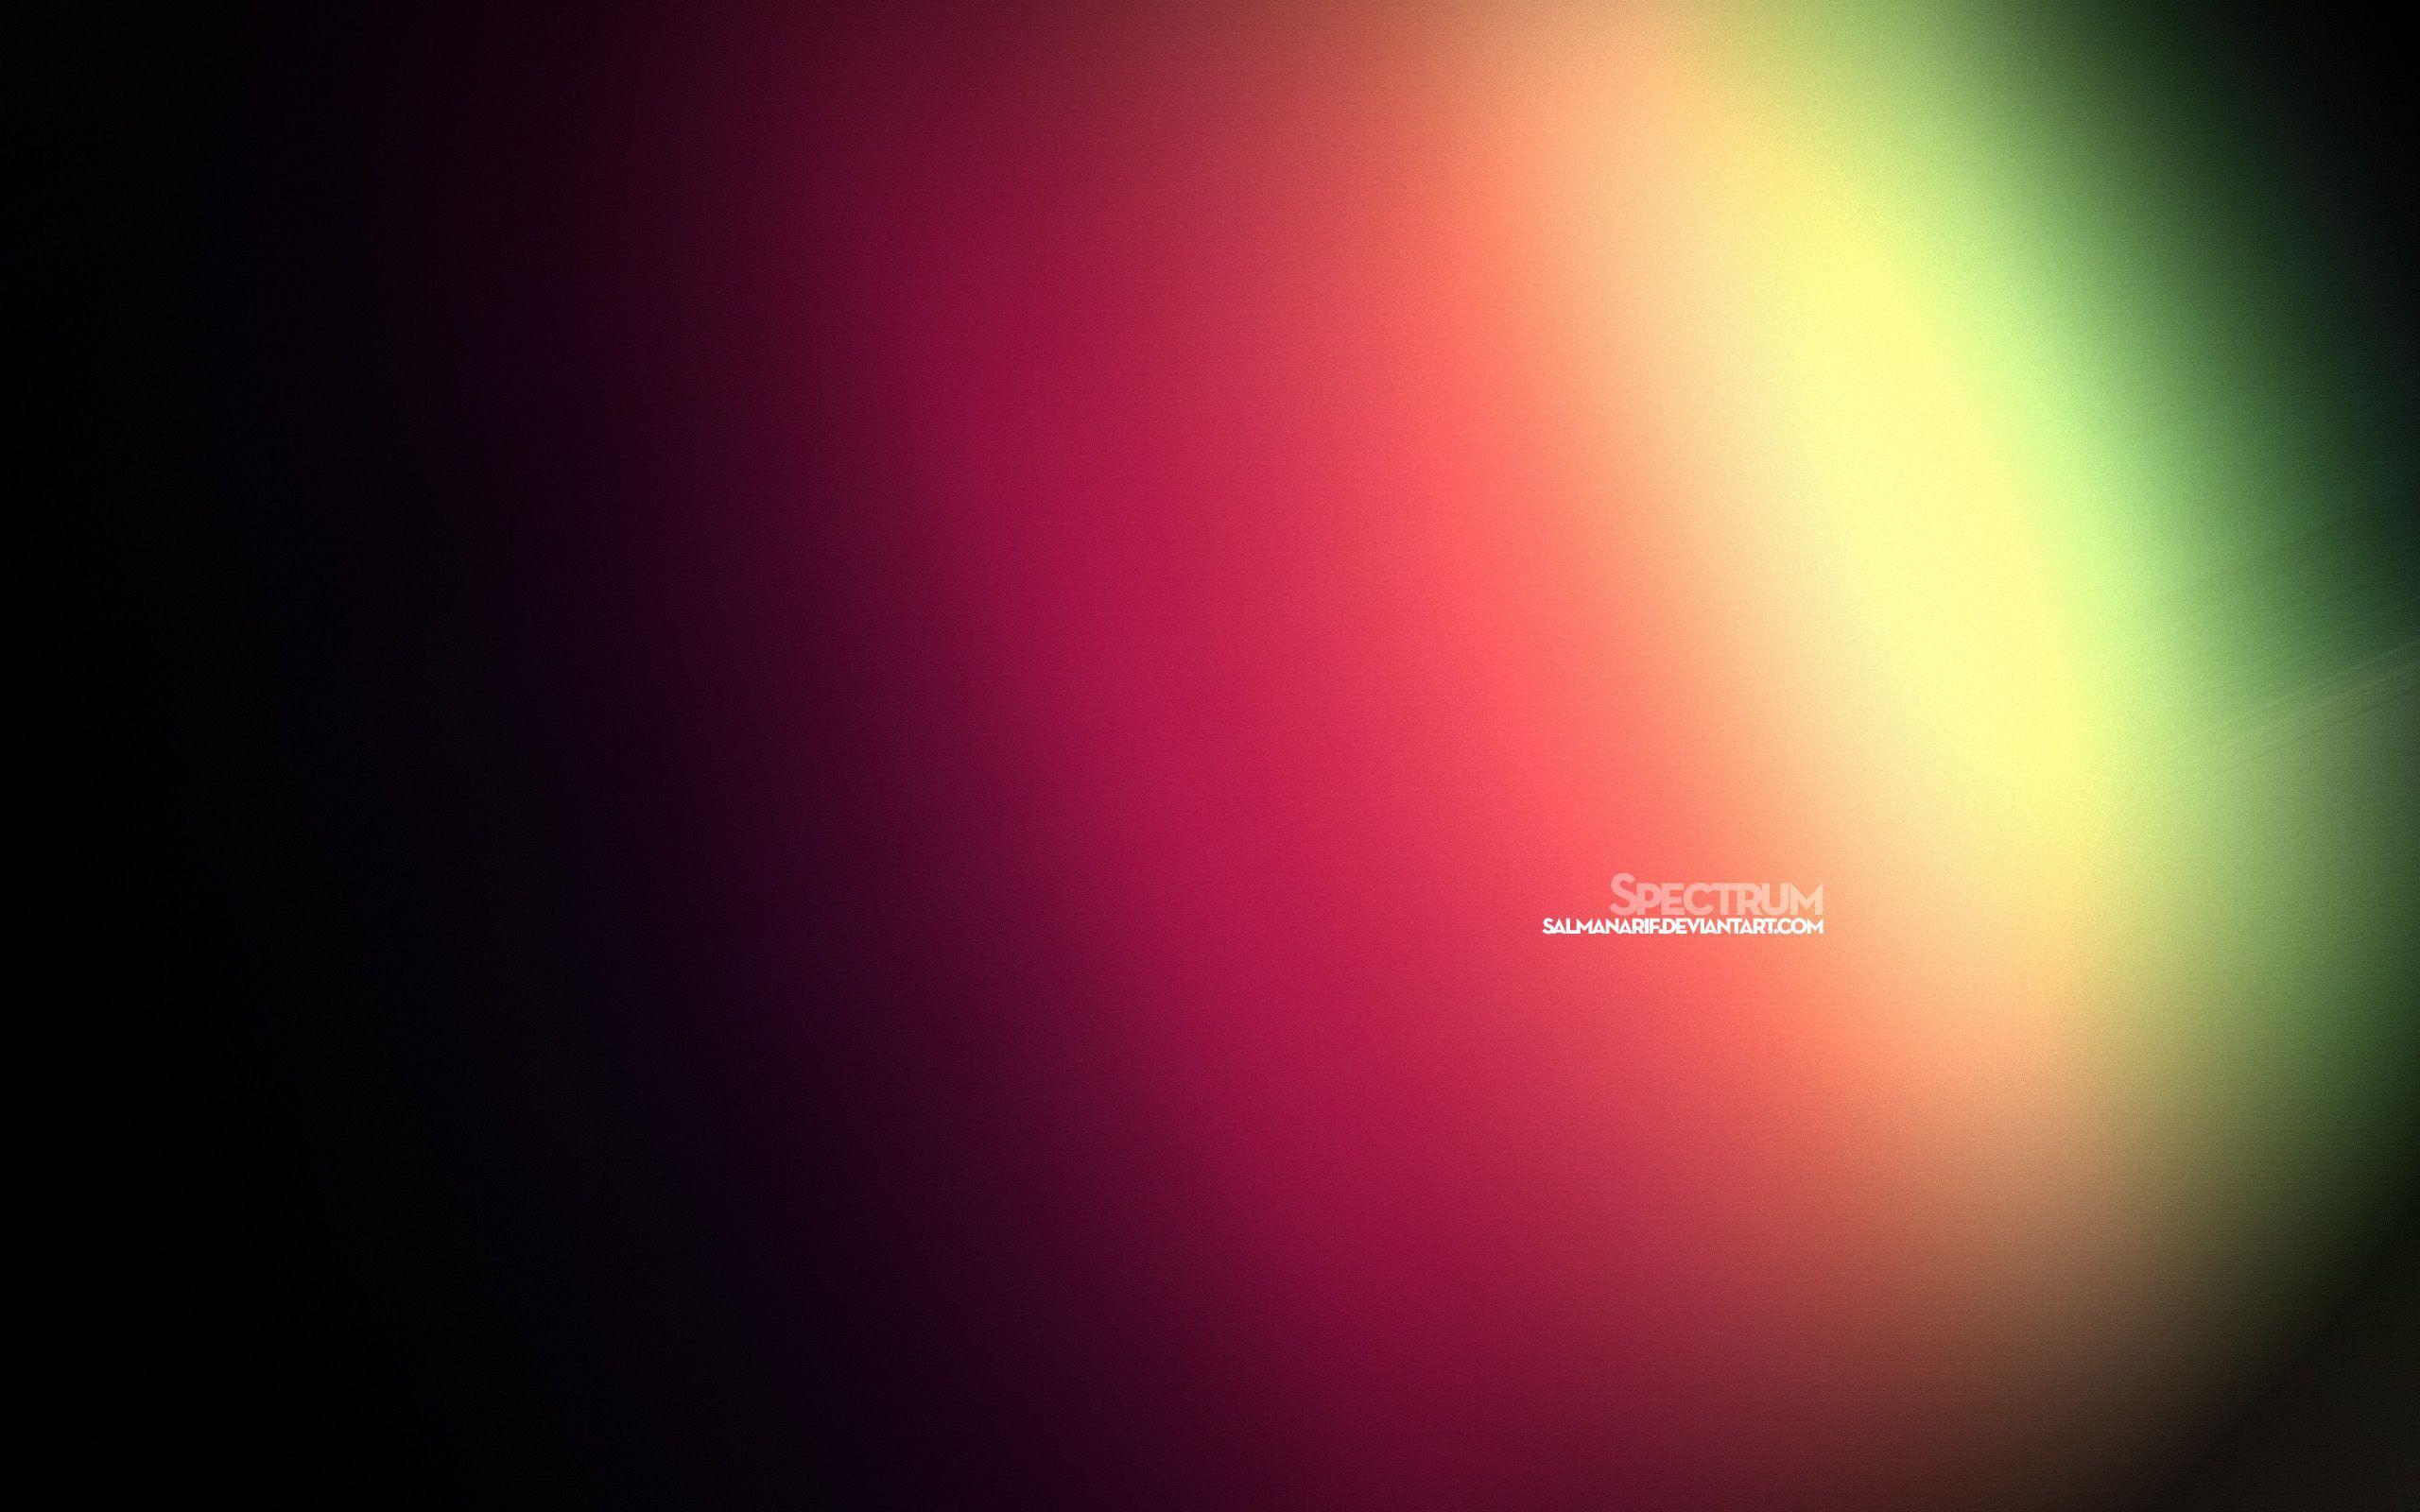 Spectrum wallpaper. Spectrum